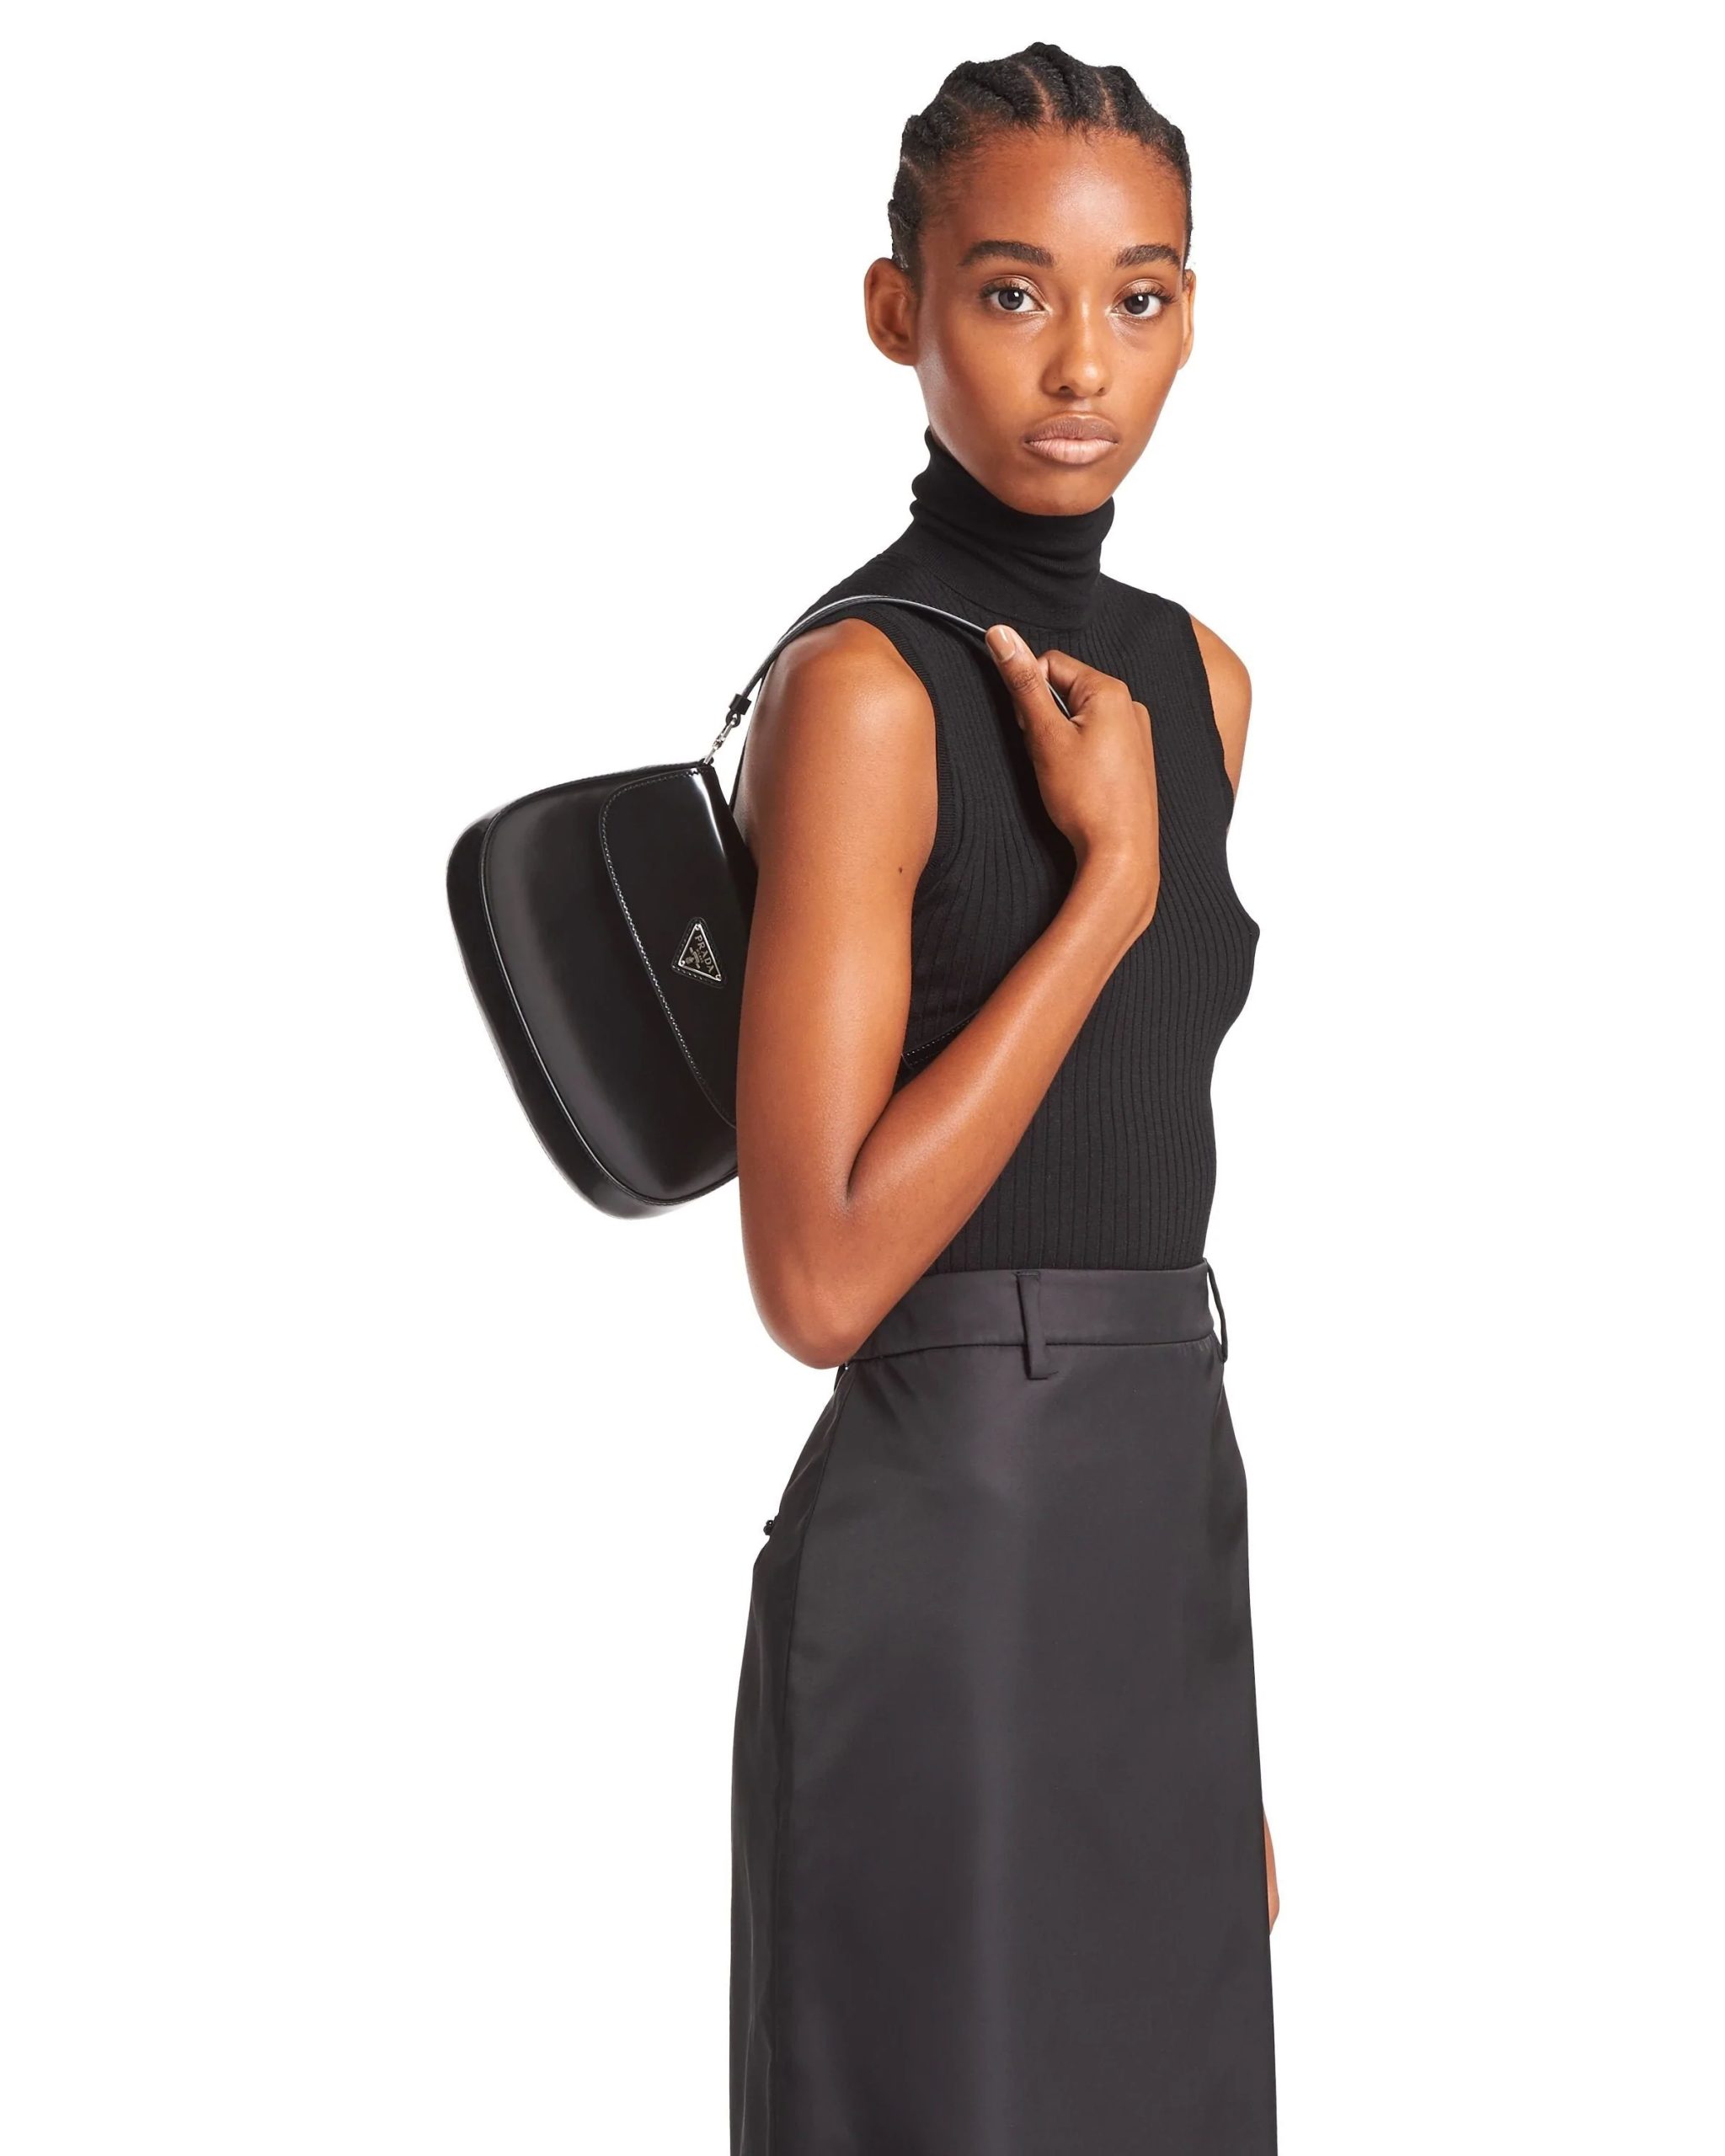 Prada Cleo Brushed Leather Shoulder Bag With Flap, Black